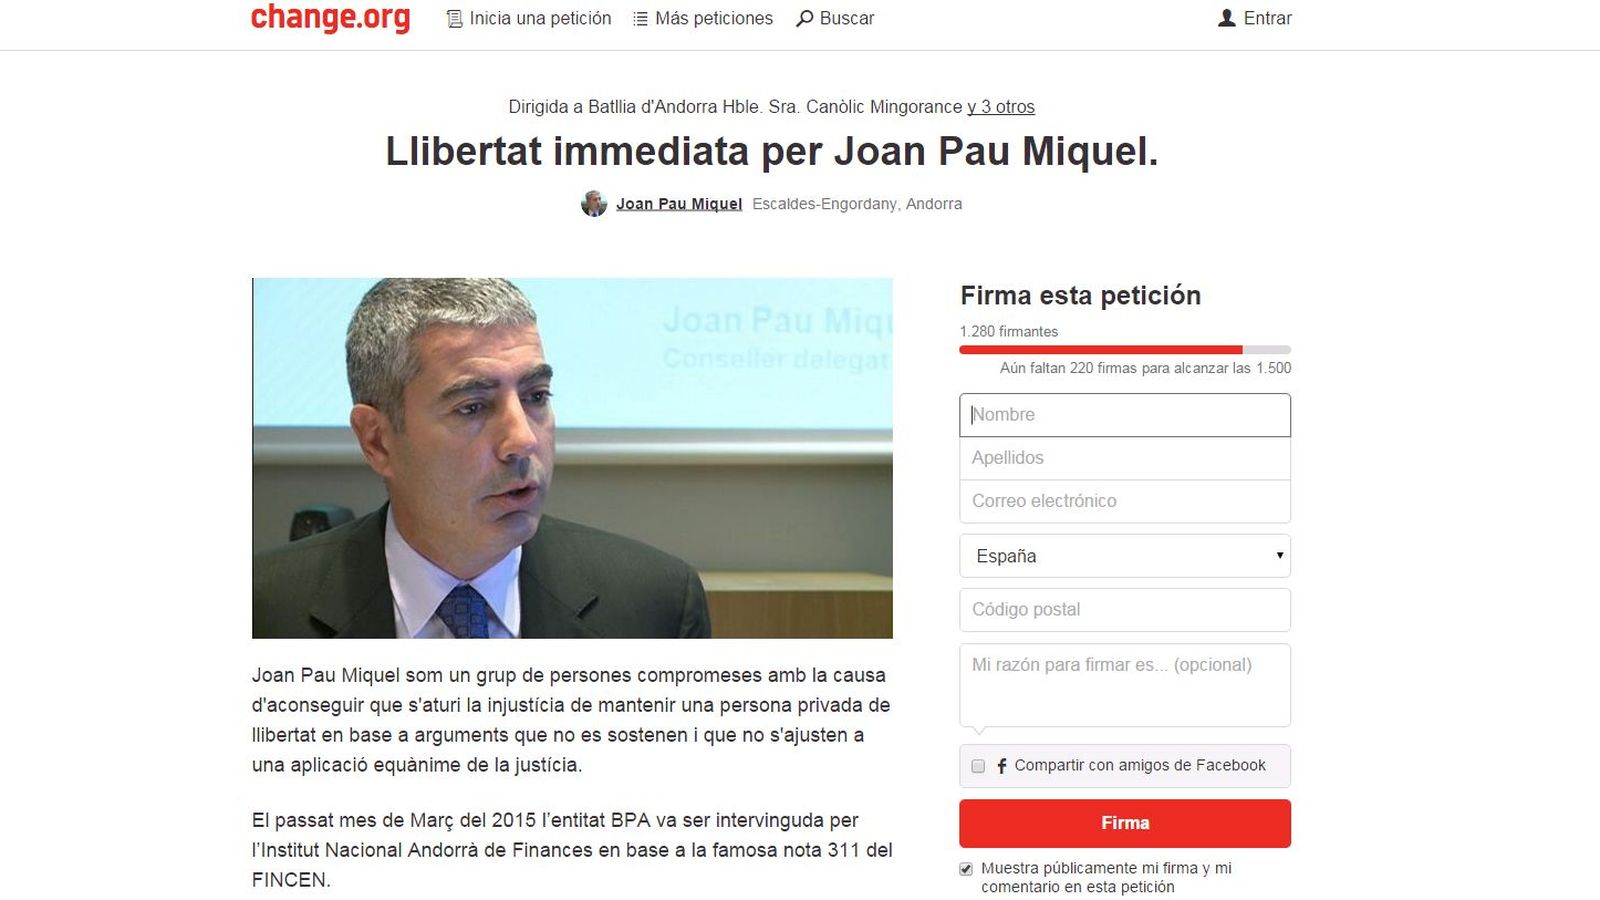 Foto: Petición por la libertad inmediata para Joan Pau Miquel en change.org.